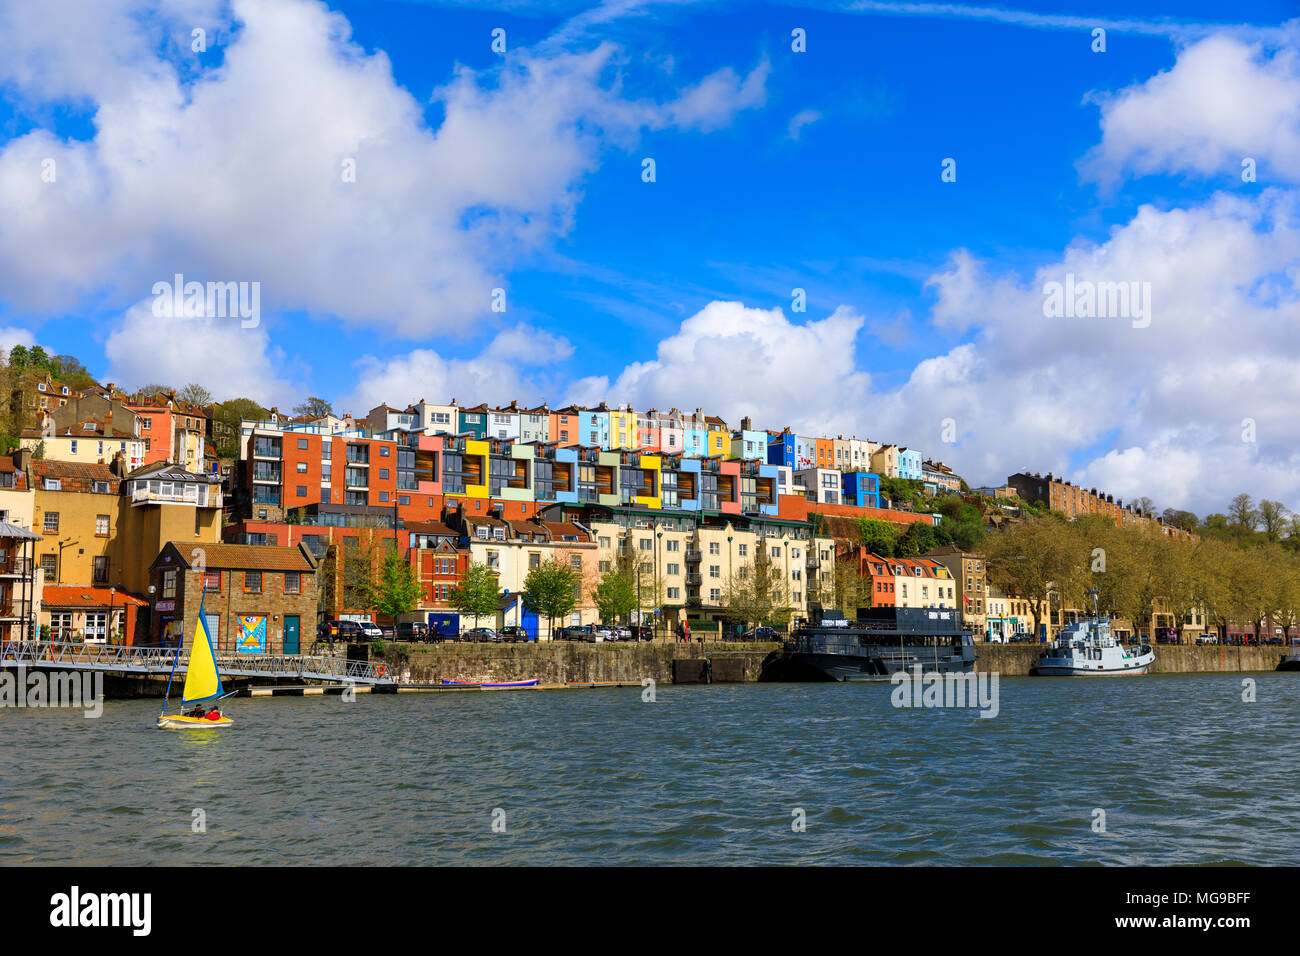 Vue sur la rivière Avon de fluffy clouds over maisons colorées de Bristol (Royaume-Uni). Banque D'Images